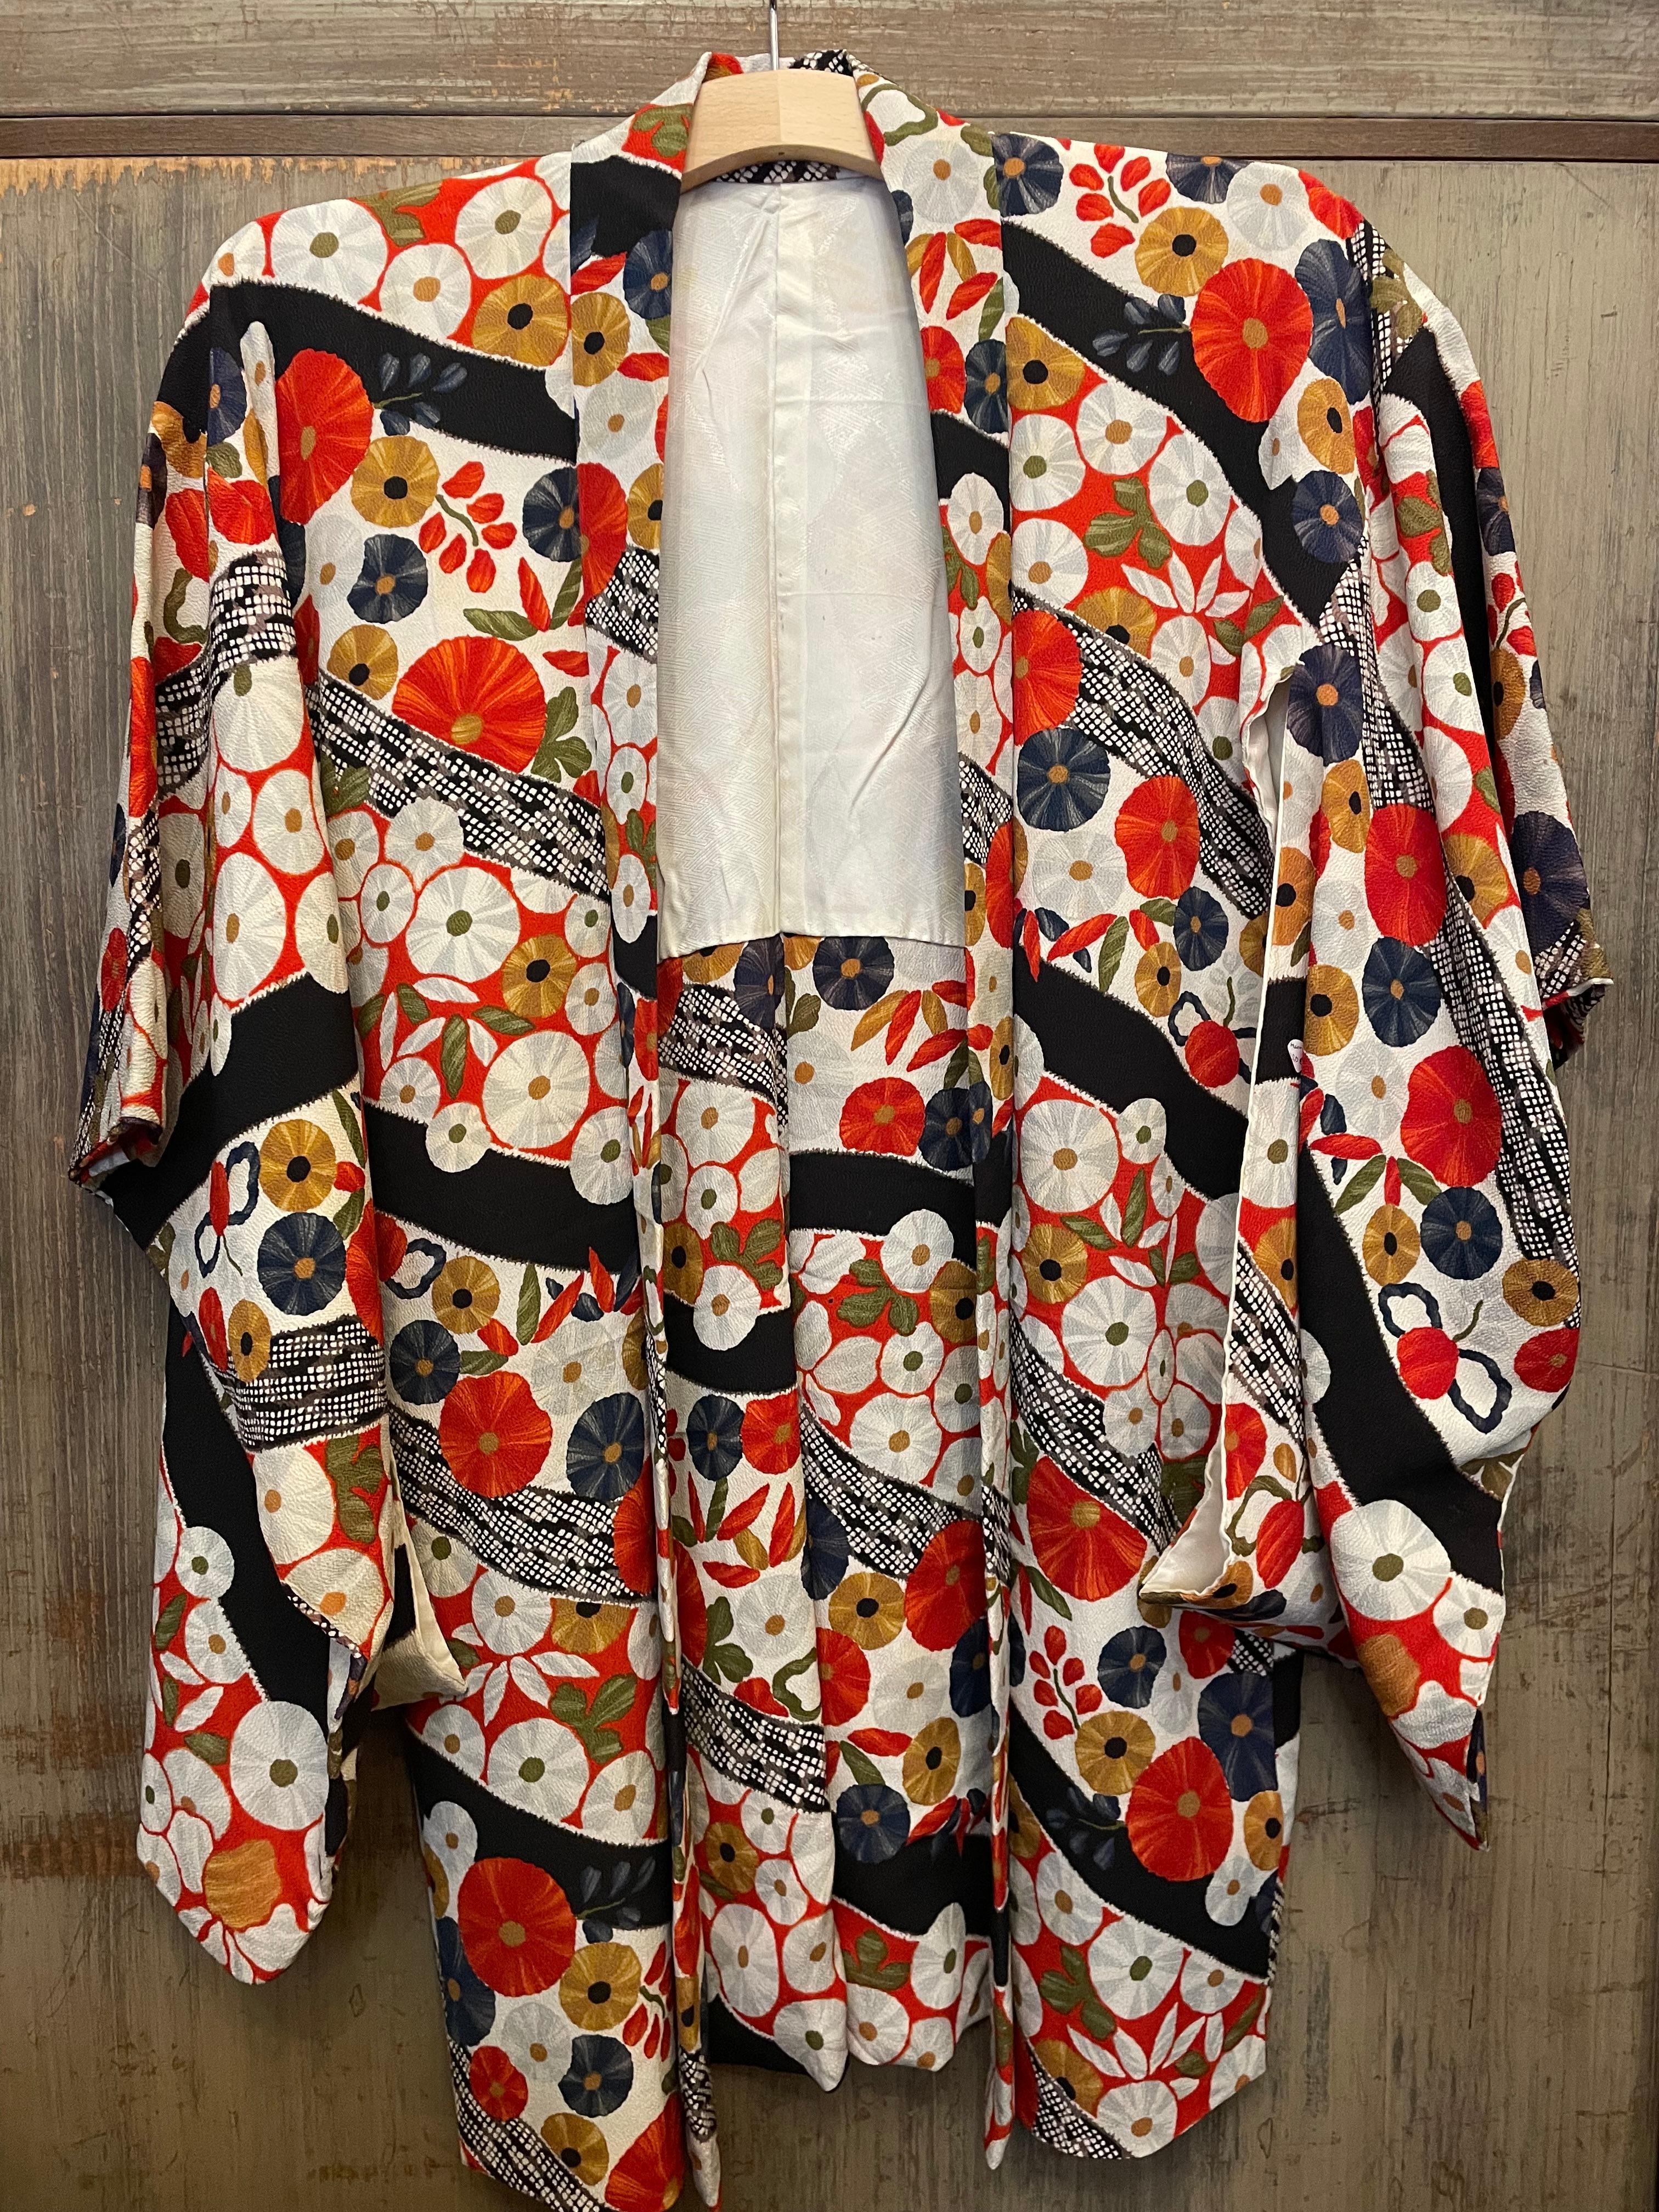 Il s'agit d'une veste en soie fabriquée au Japon.
Il a été fabriqué à l'époque Showa, dans les années 1980.

Le haori est une veste traditionnelle japonaise qui descend jusqu'aux hanches ou aux cuisses et qui se porte par-dessus un kimono.